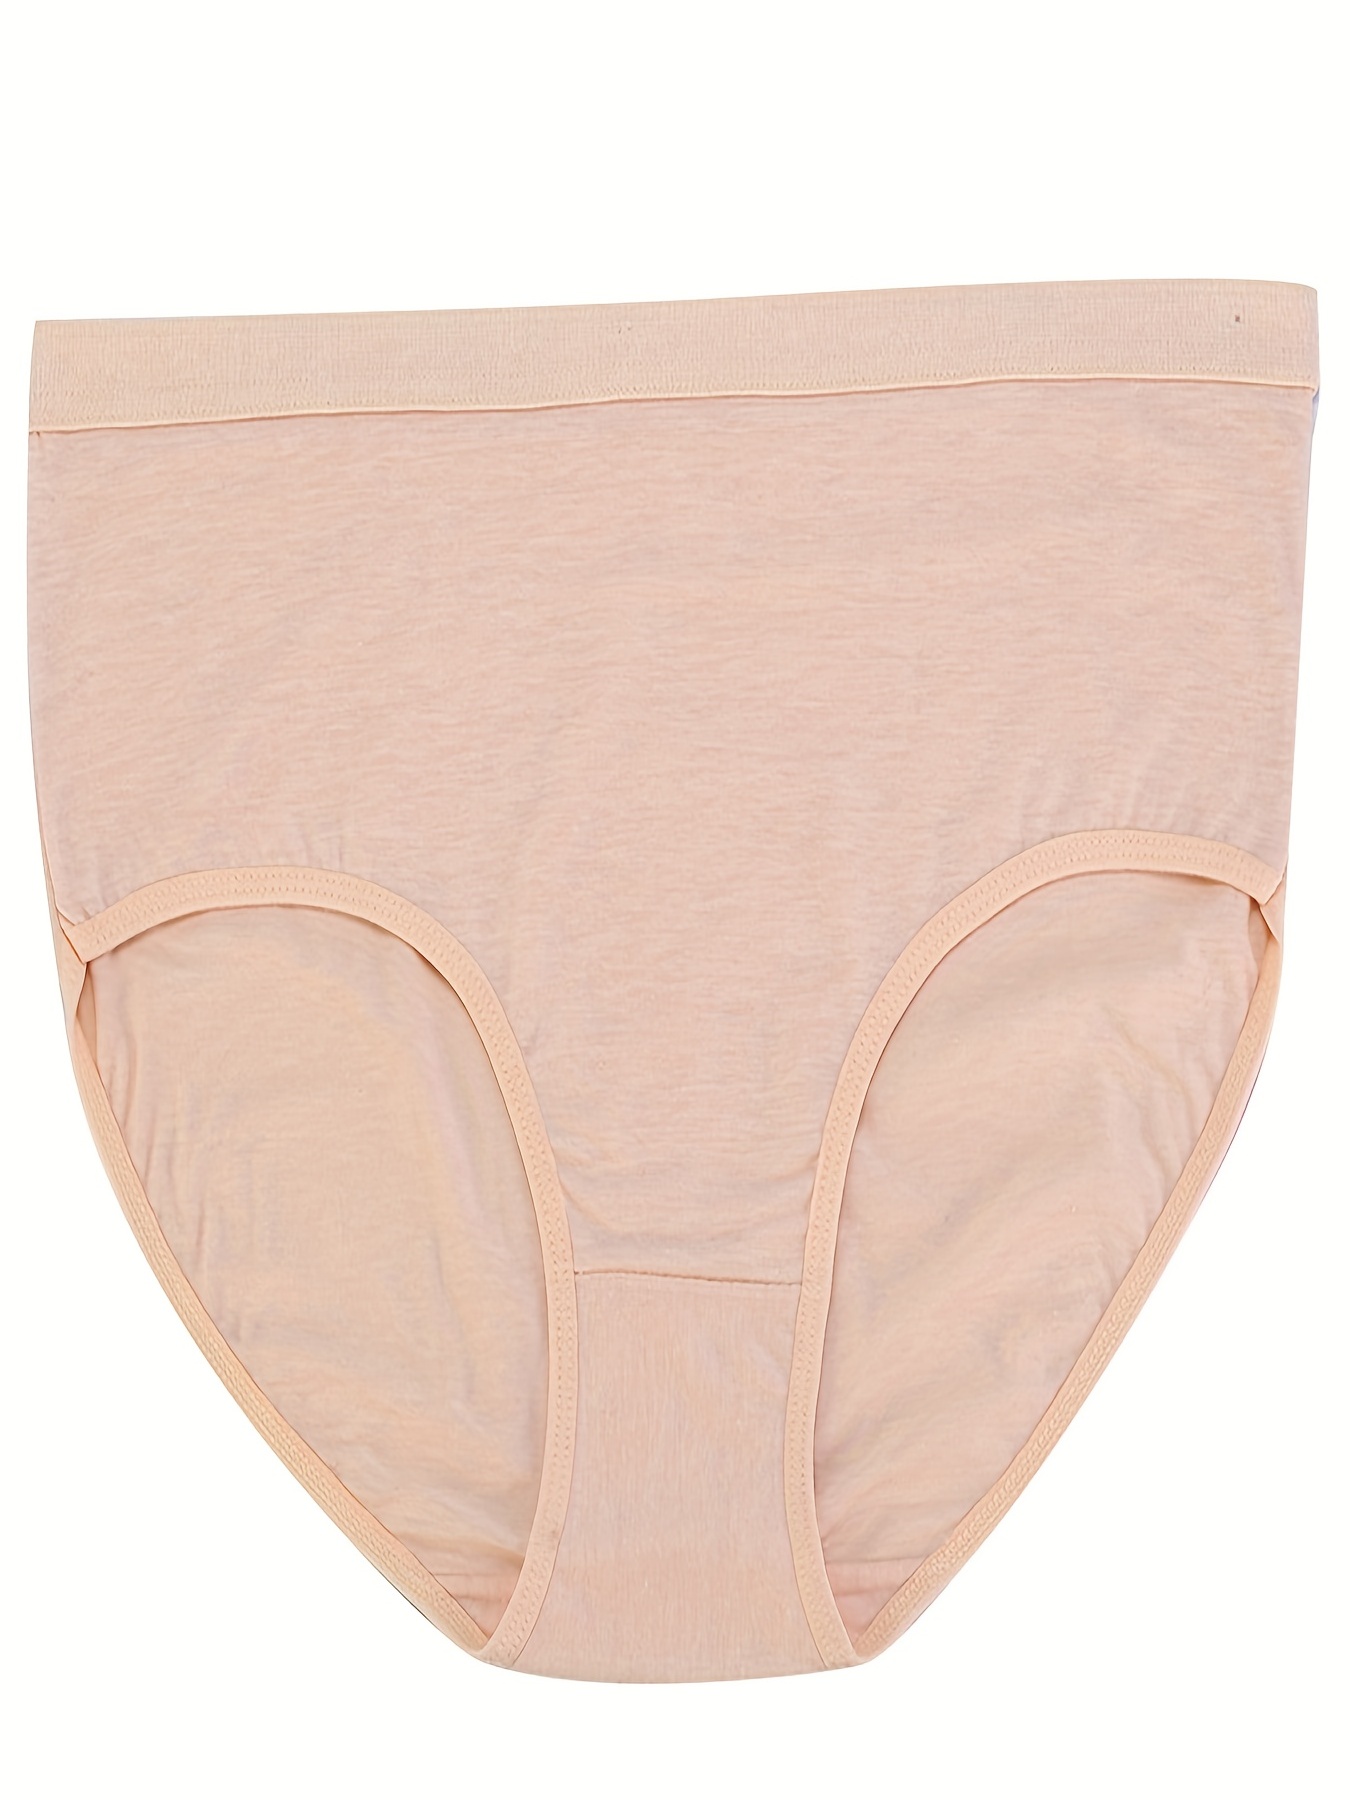 Women's Underwear Large Size Cotton Medium High Waist Women's